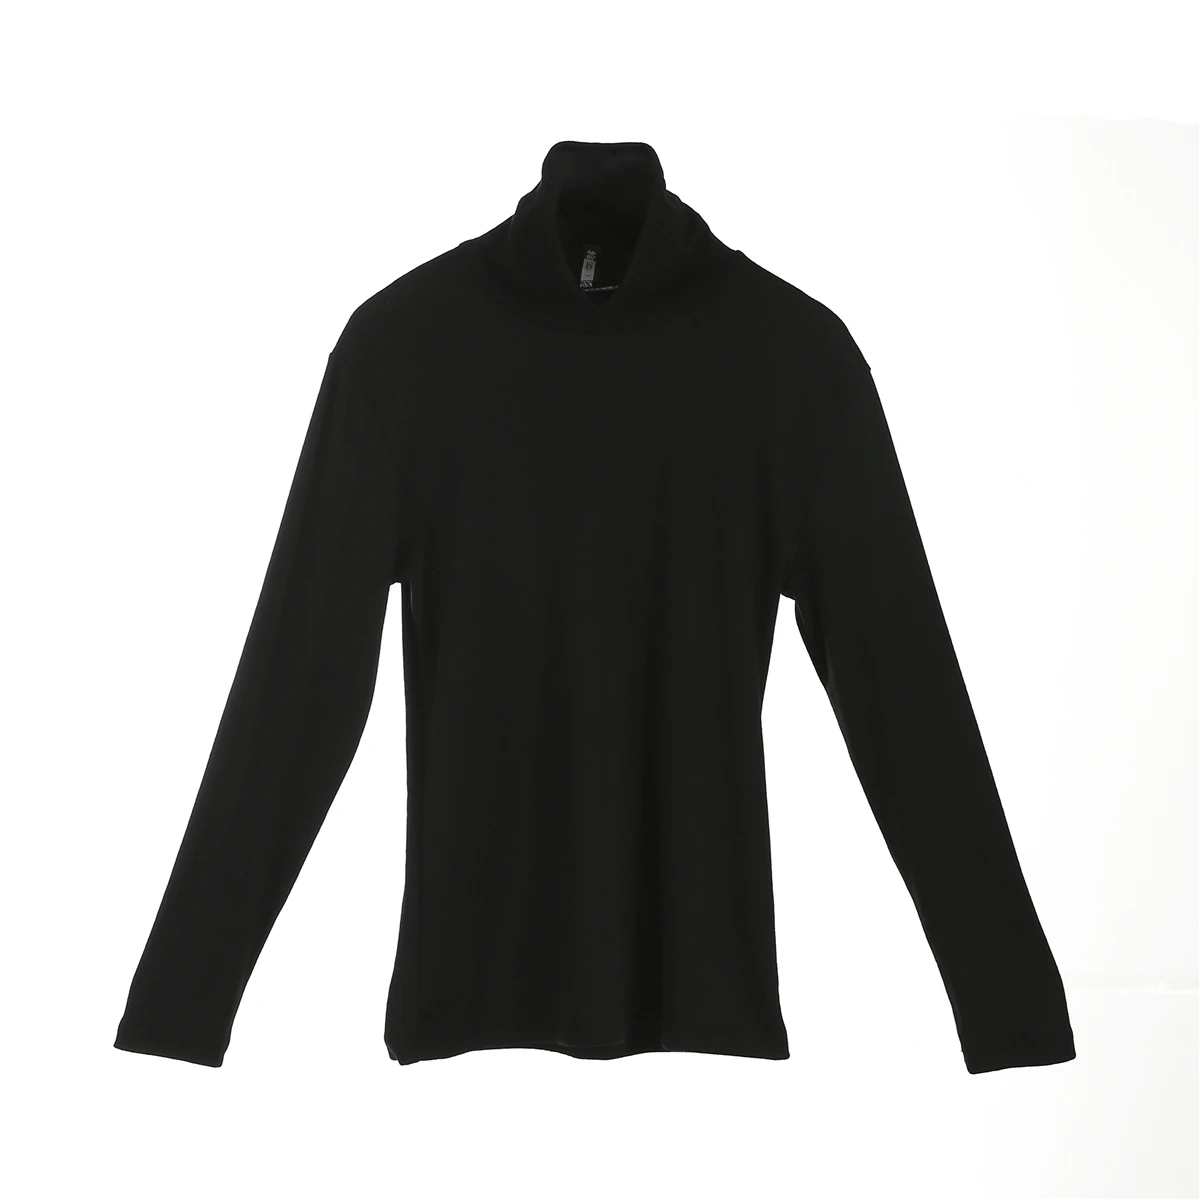 Хит, мужской облегающий вязаный пуловер с высоким воротом, водолазка, джемпер, свитер, топы, рубашка - Цвет: Черный